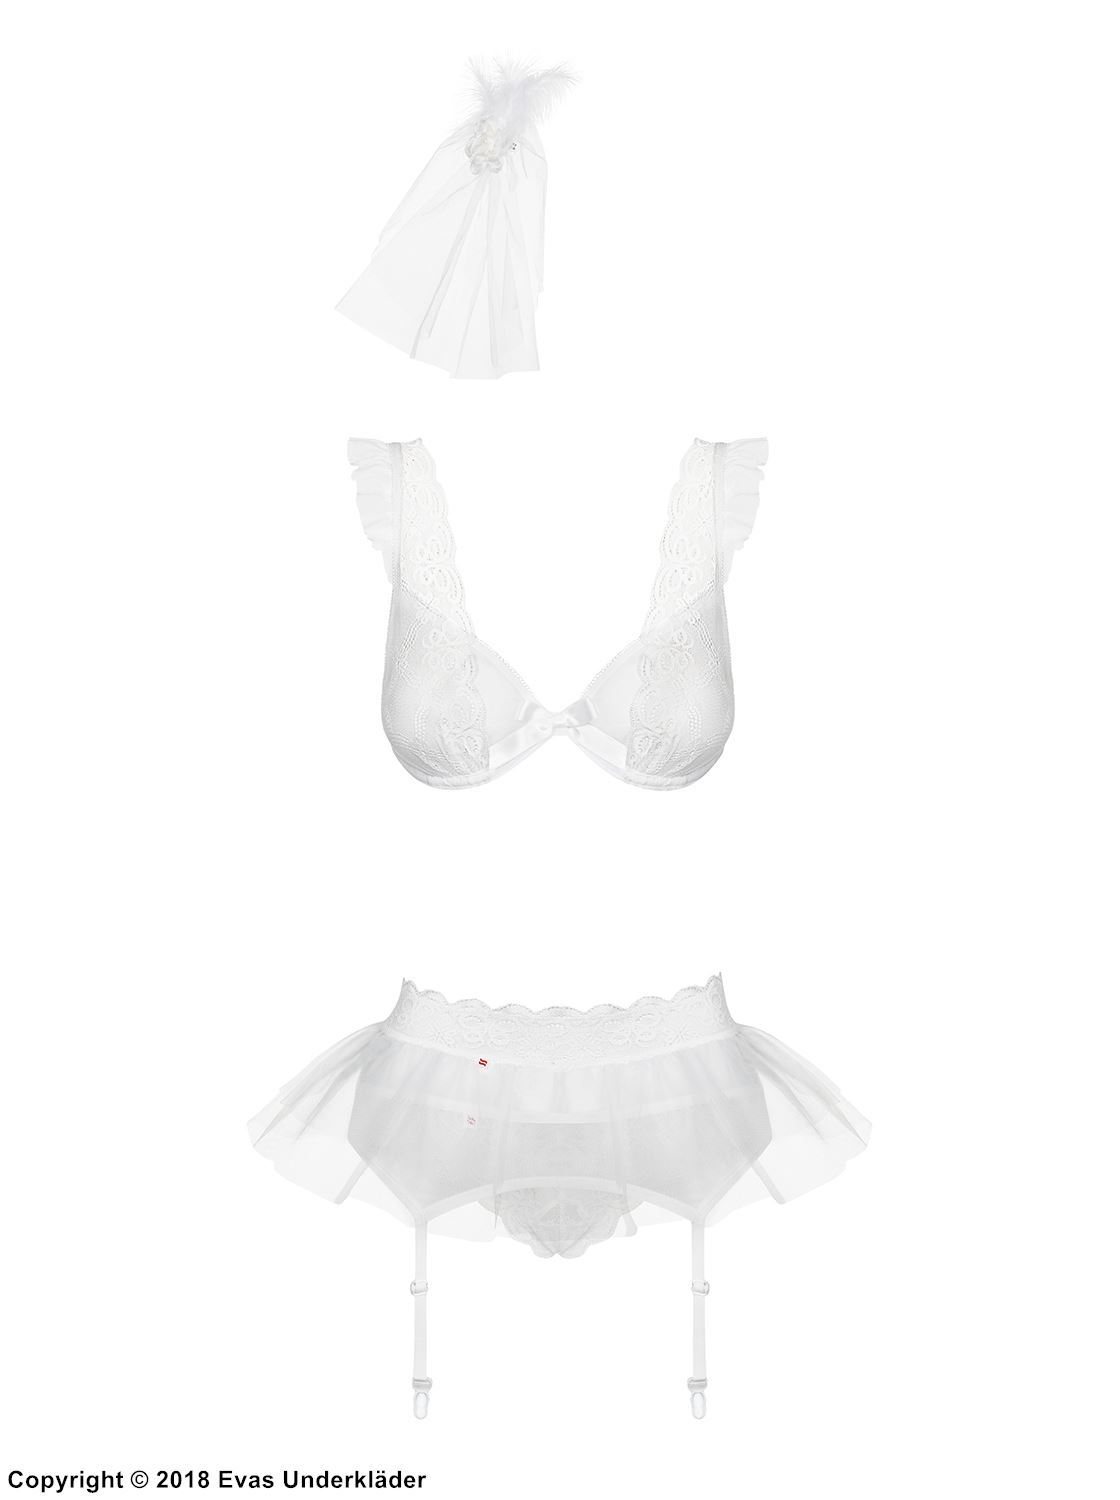 Romantic lingerie set, bow, lace ruffles, veil, bridal style